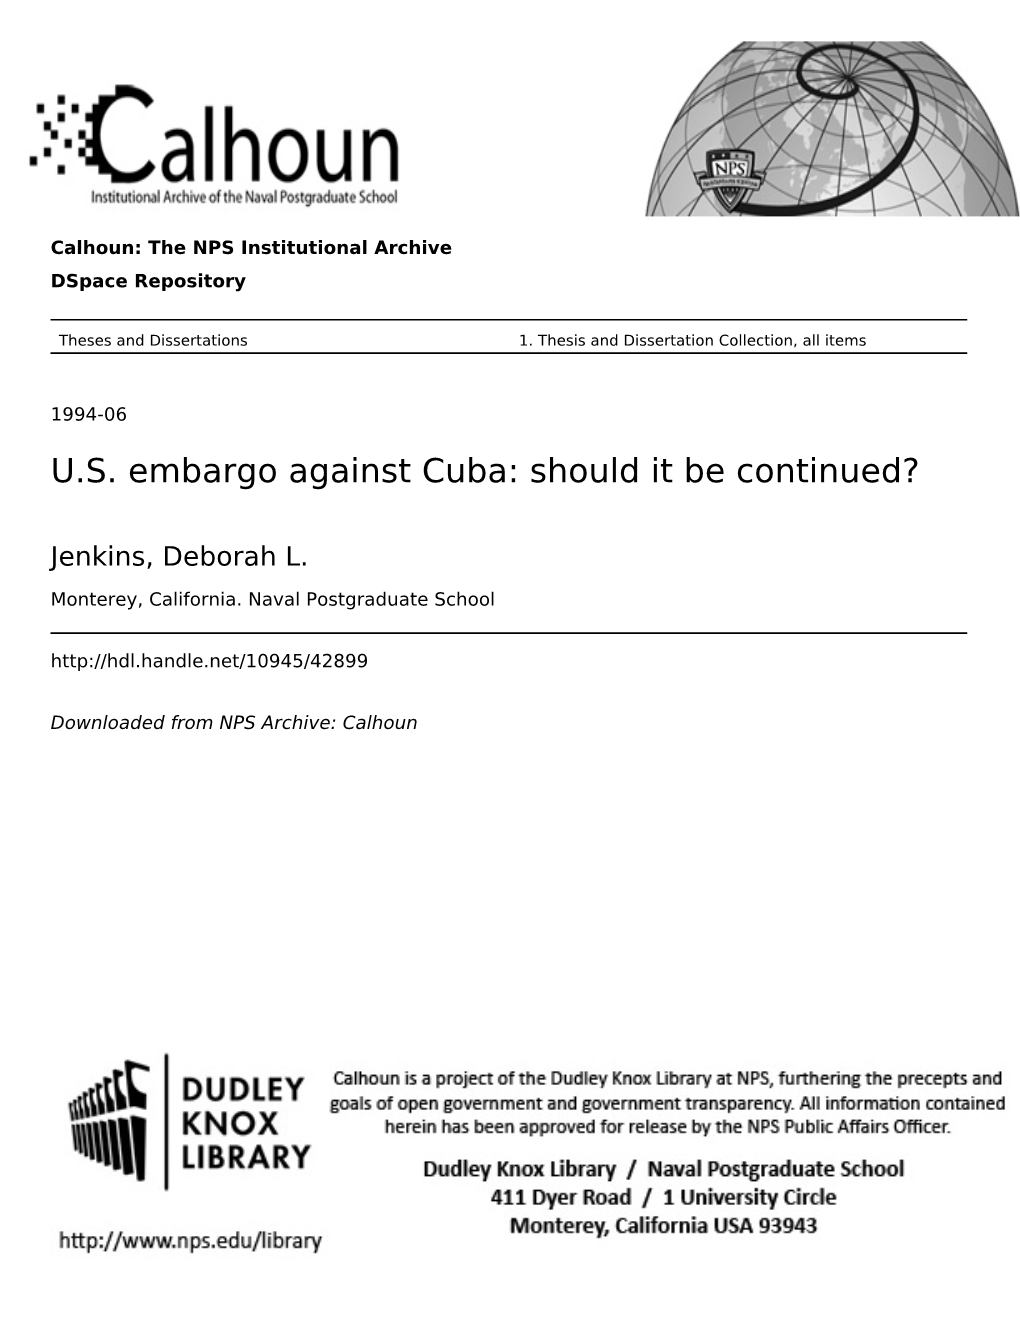 US Embargo Against Cuba